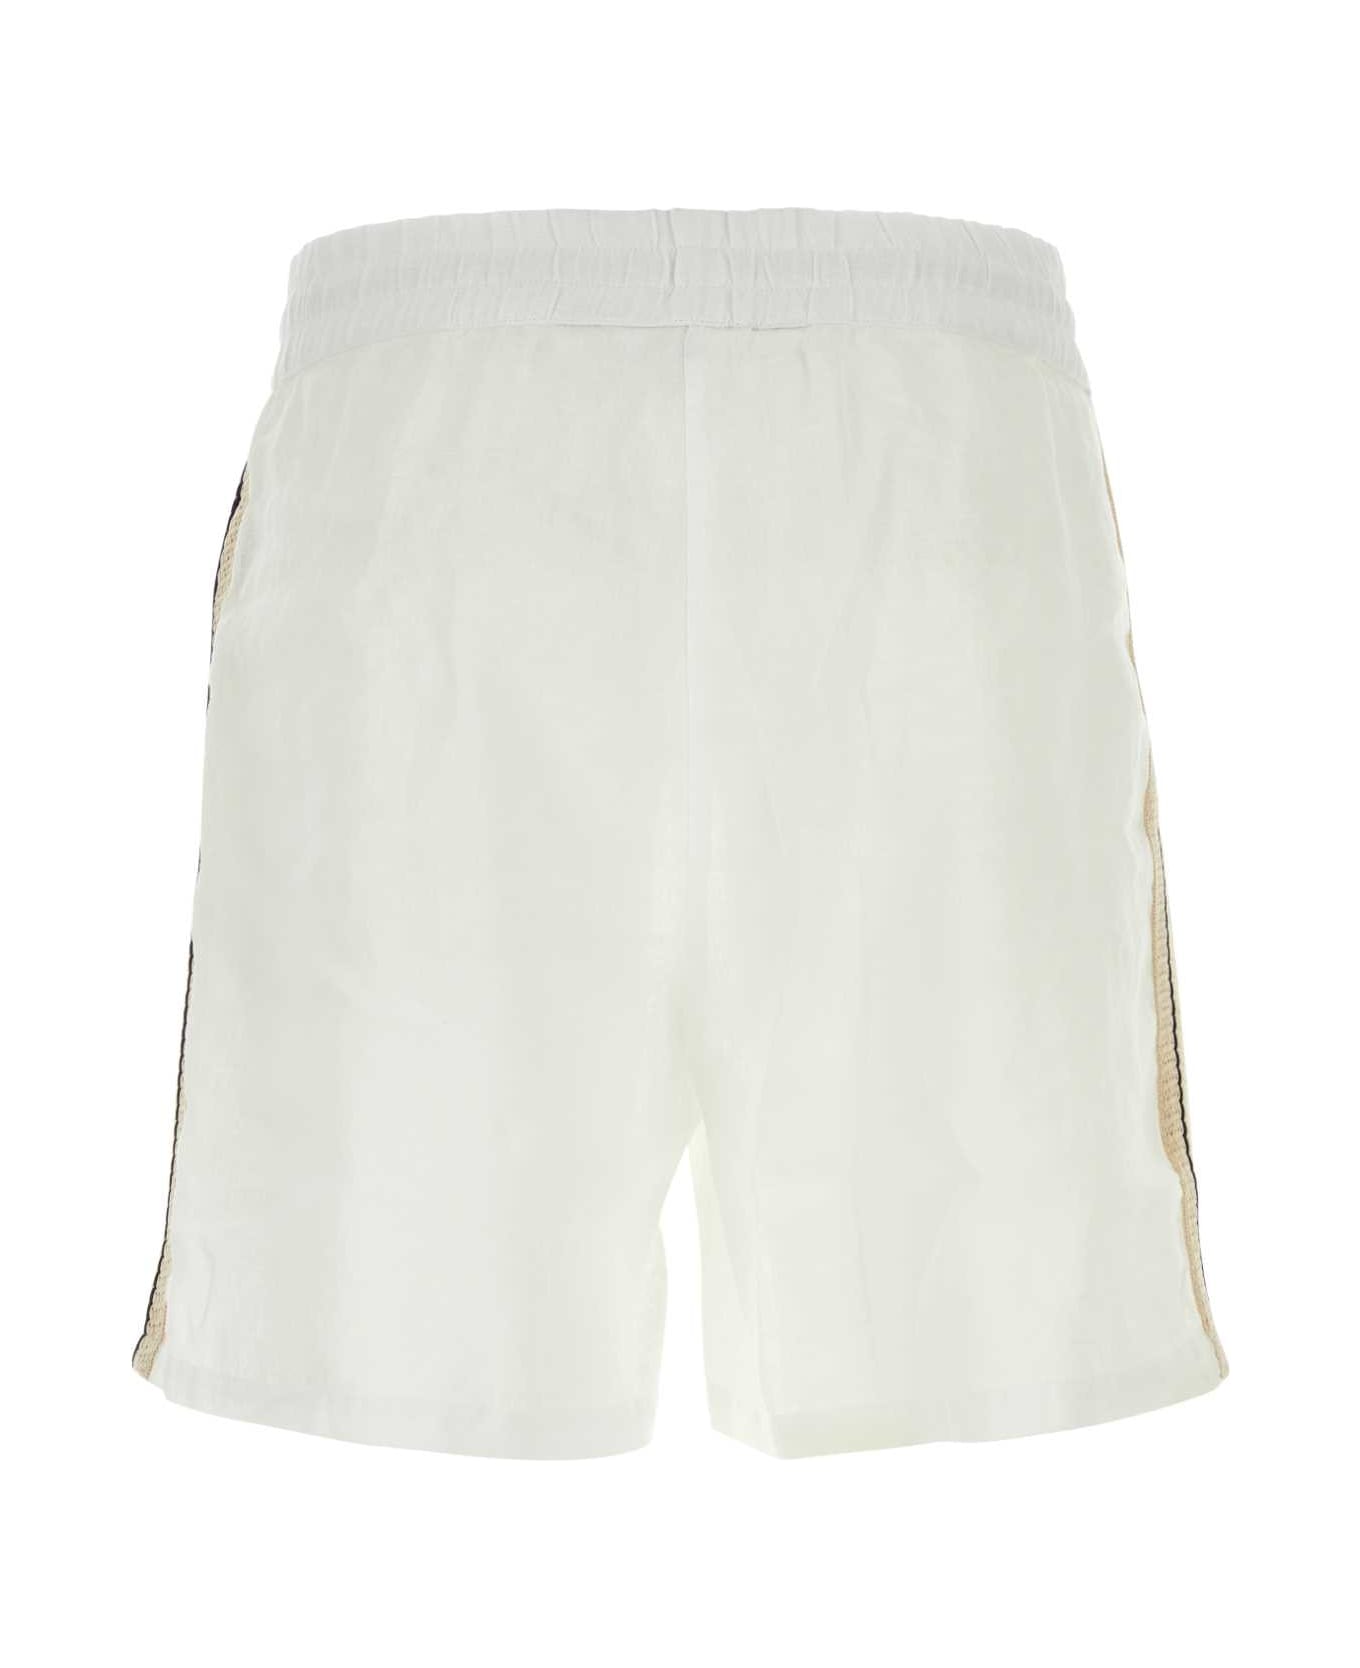 Palm Angels White Linen Bermuda Shorts - OFFWHITE ショートパンツ